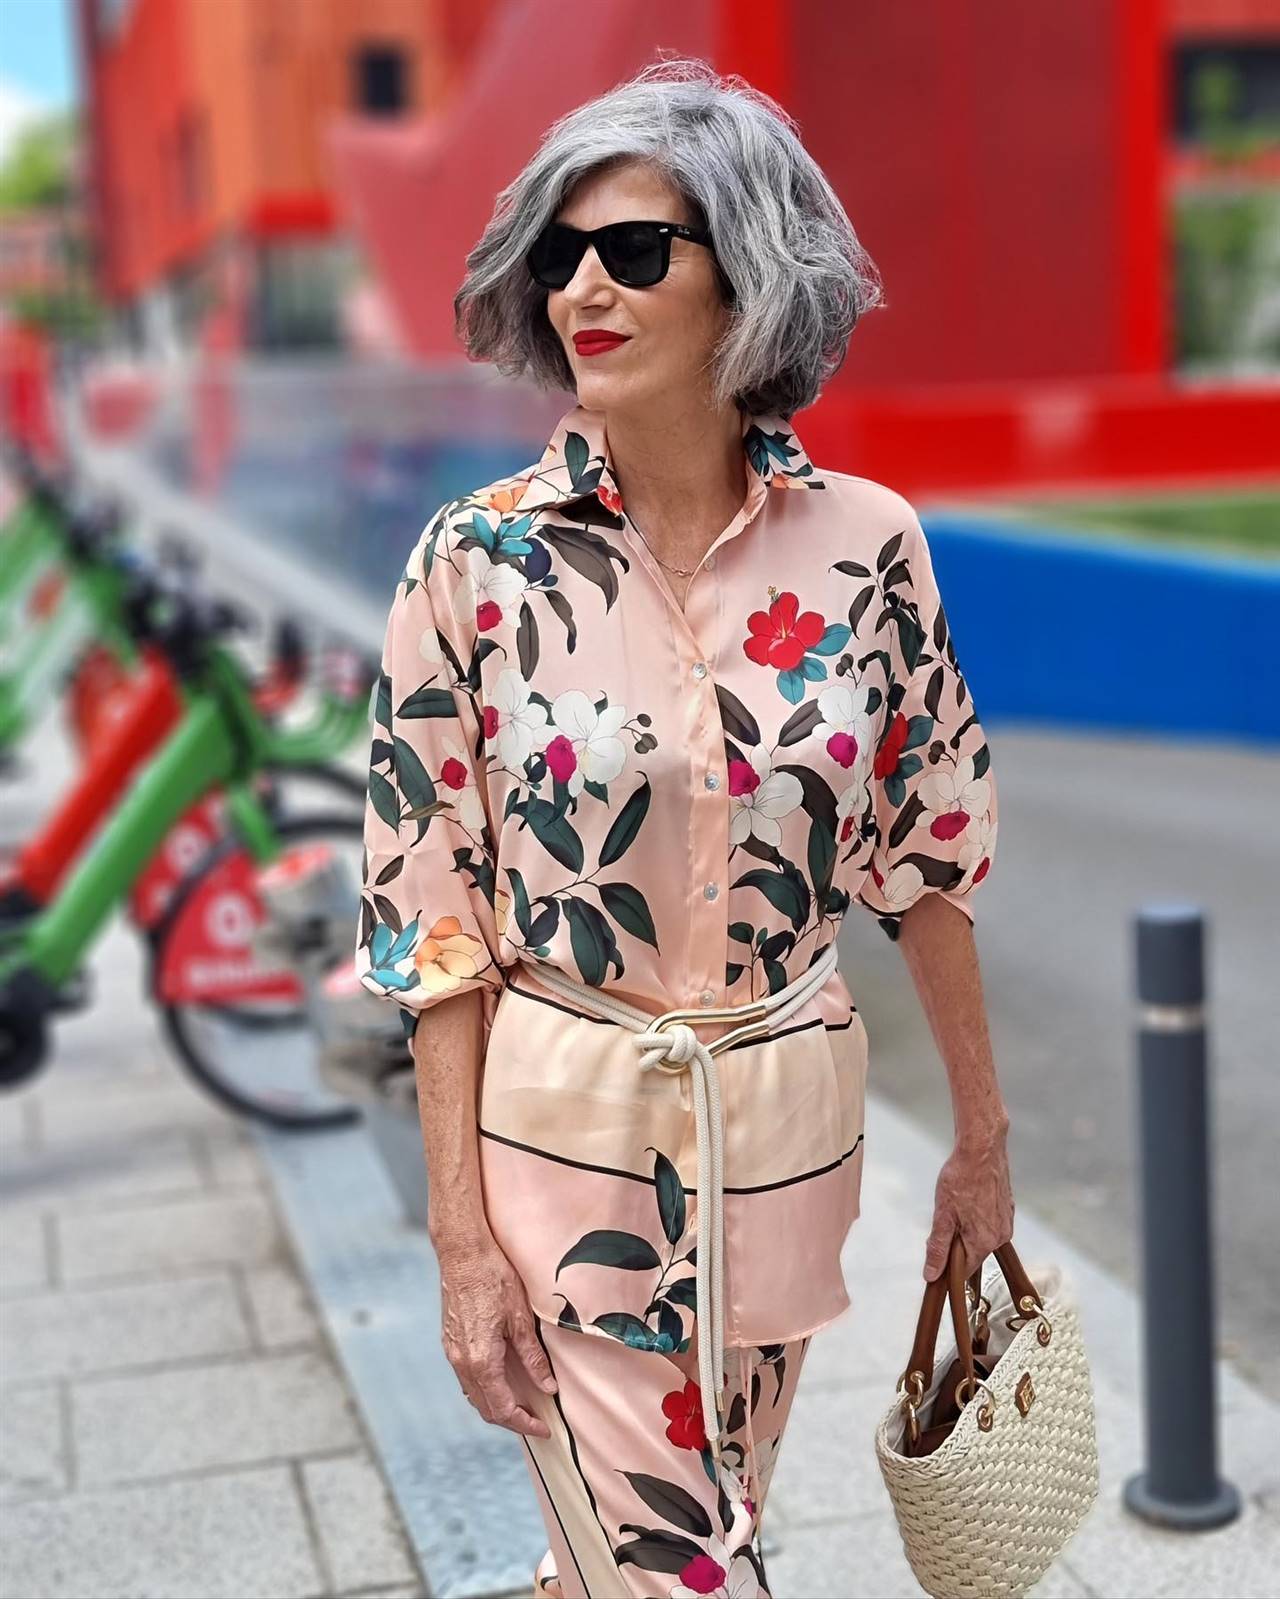 Las mujeres de más de 50 saben que esta blusa fluida Zara es más fresca y elegante el verano